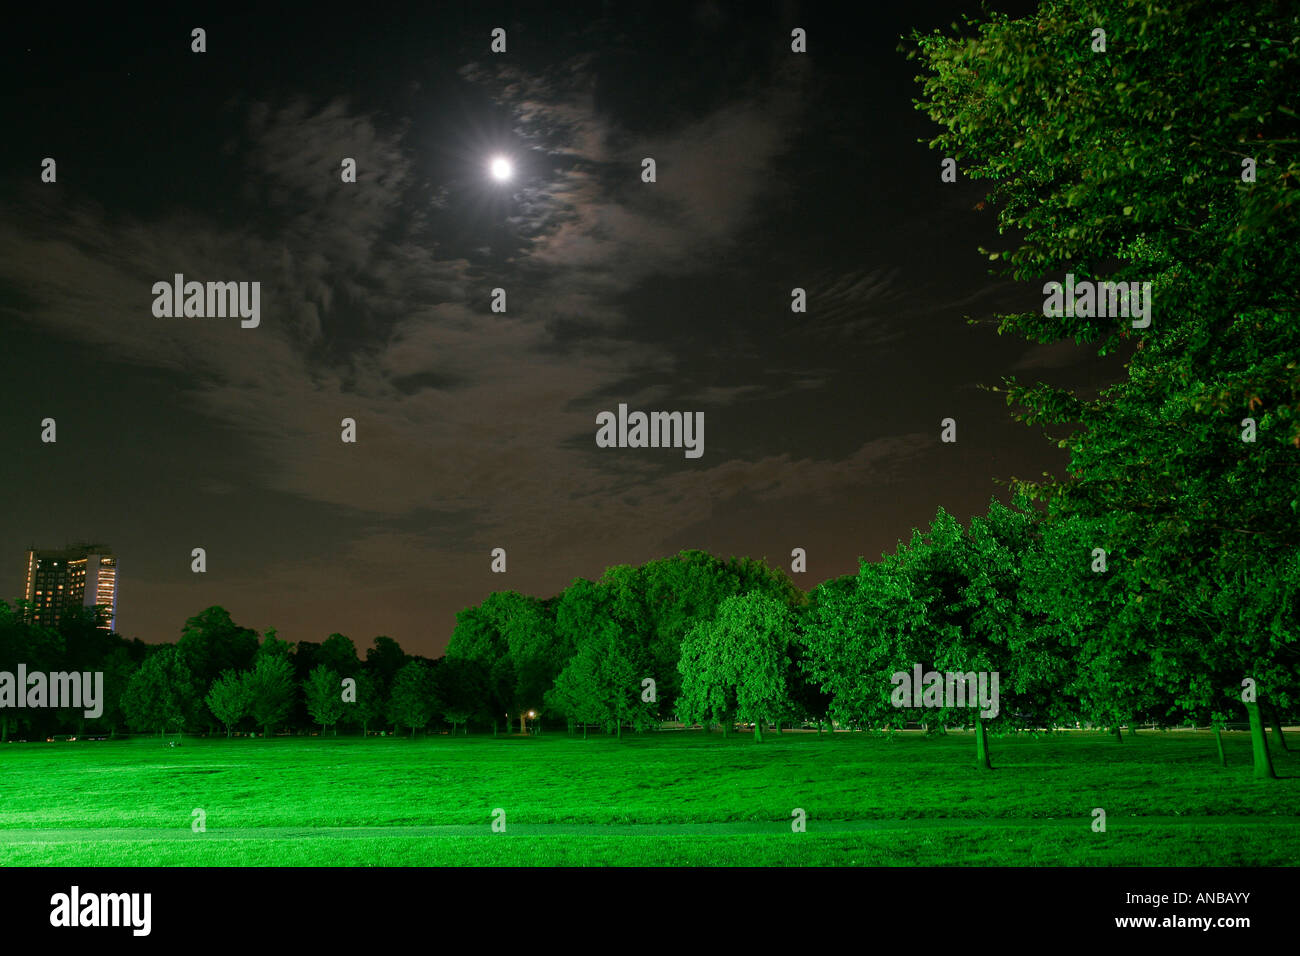 Park in der Nacht beleuchtet durch grünes Licht mit dem Mond brechen Throught die Wolken Stockfoto